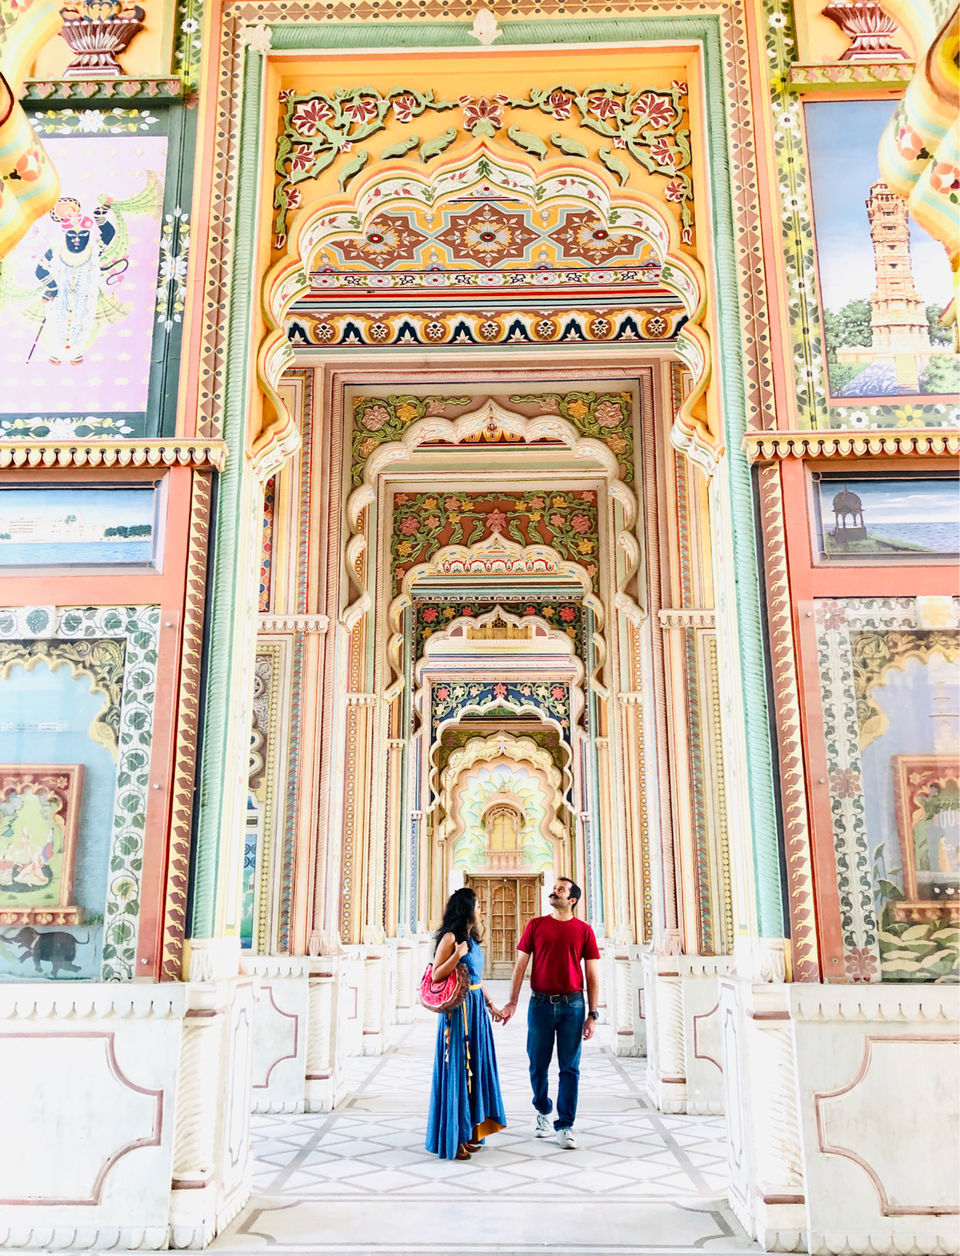 Photo of Patrika Gate, Jawahar Circle, Jaipur, Rajasthan, India by Abagfullofmaps